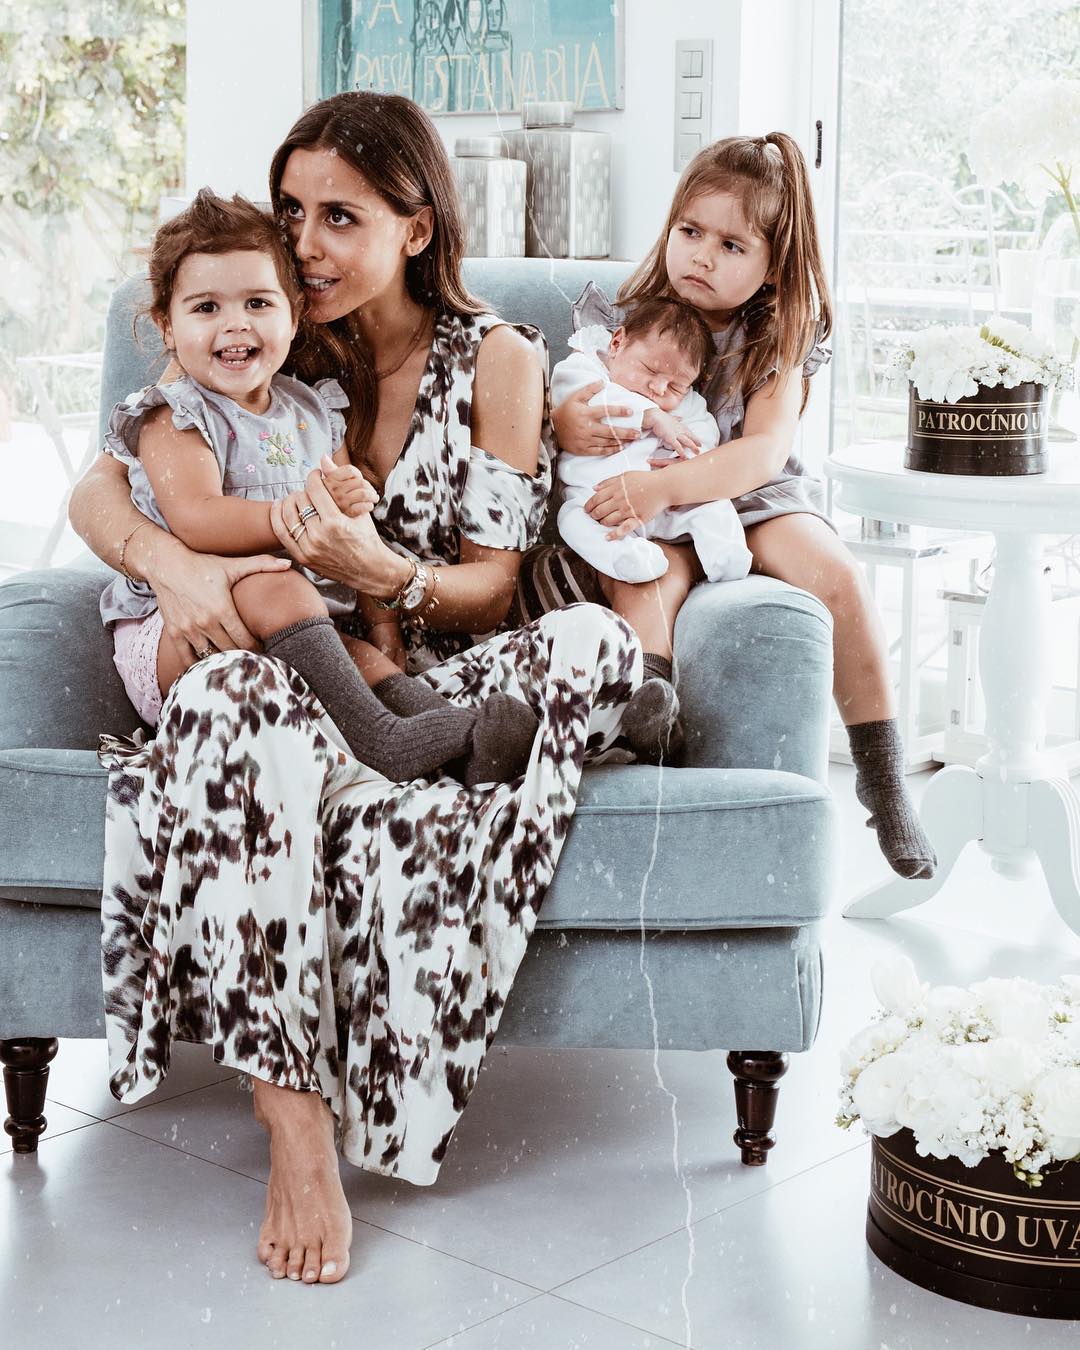 A bebé veio juntar-se a Diana, de quatro anos, e Frederica, de dois. | Foto via Instagram @carolinapatrocinio